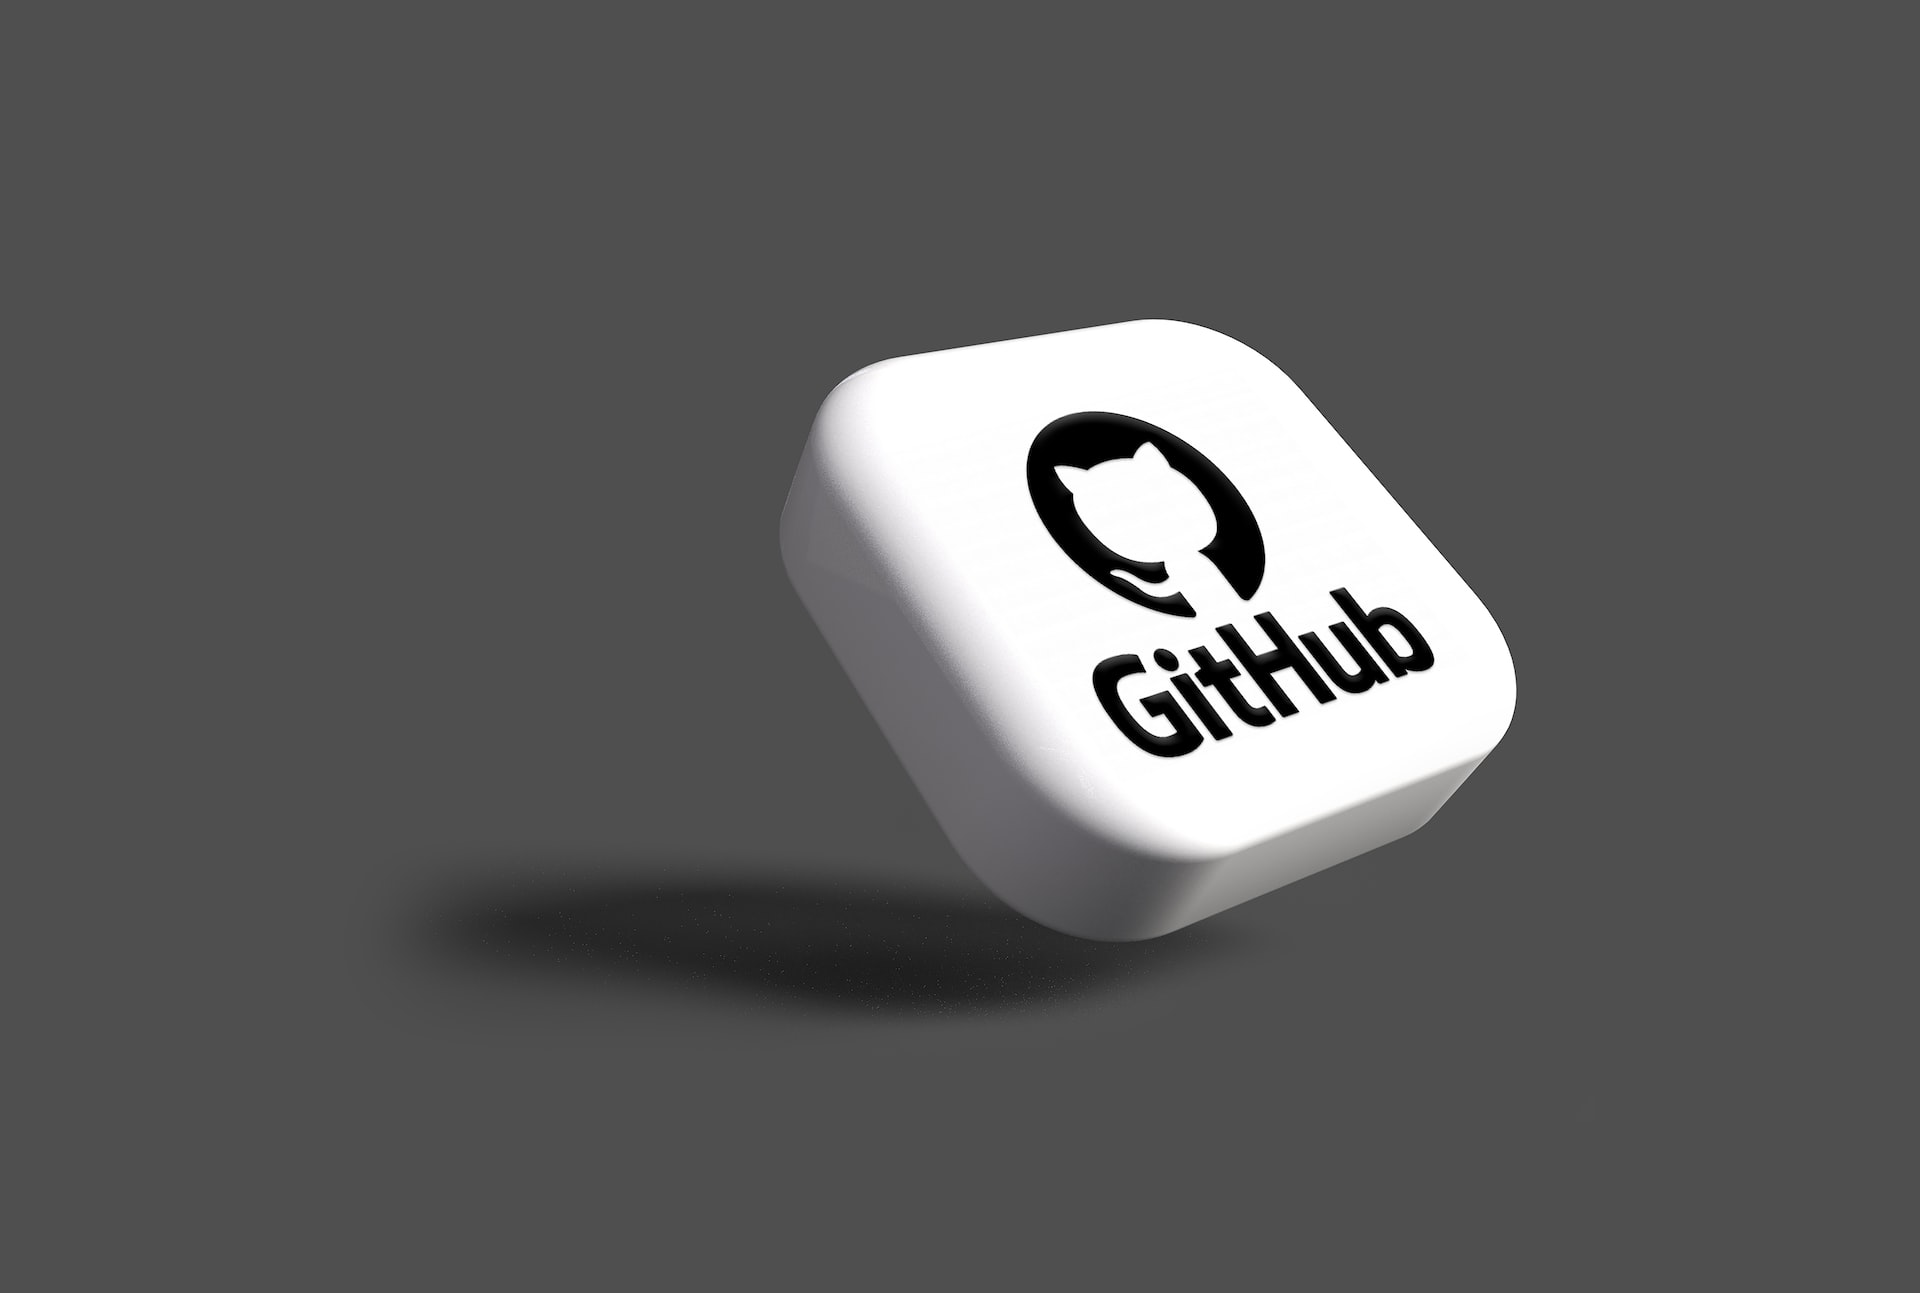 A GitHub button.